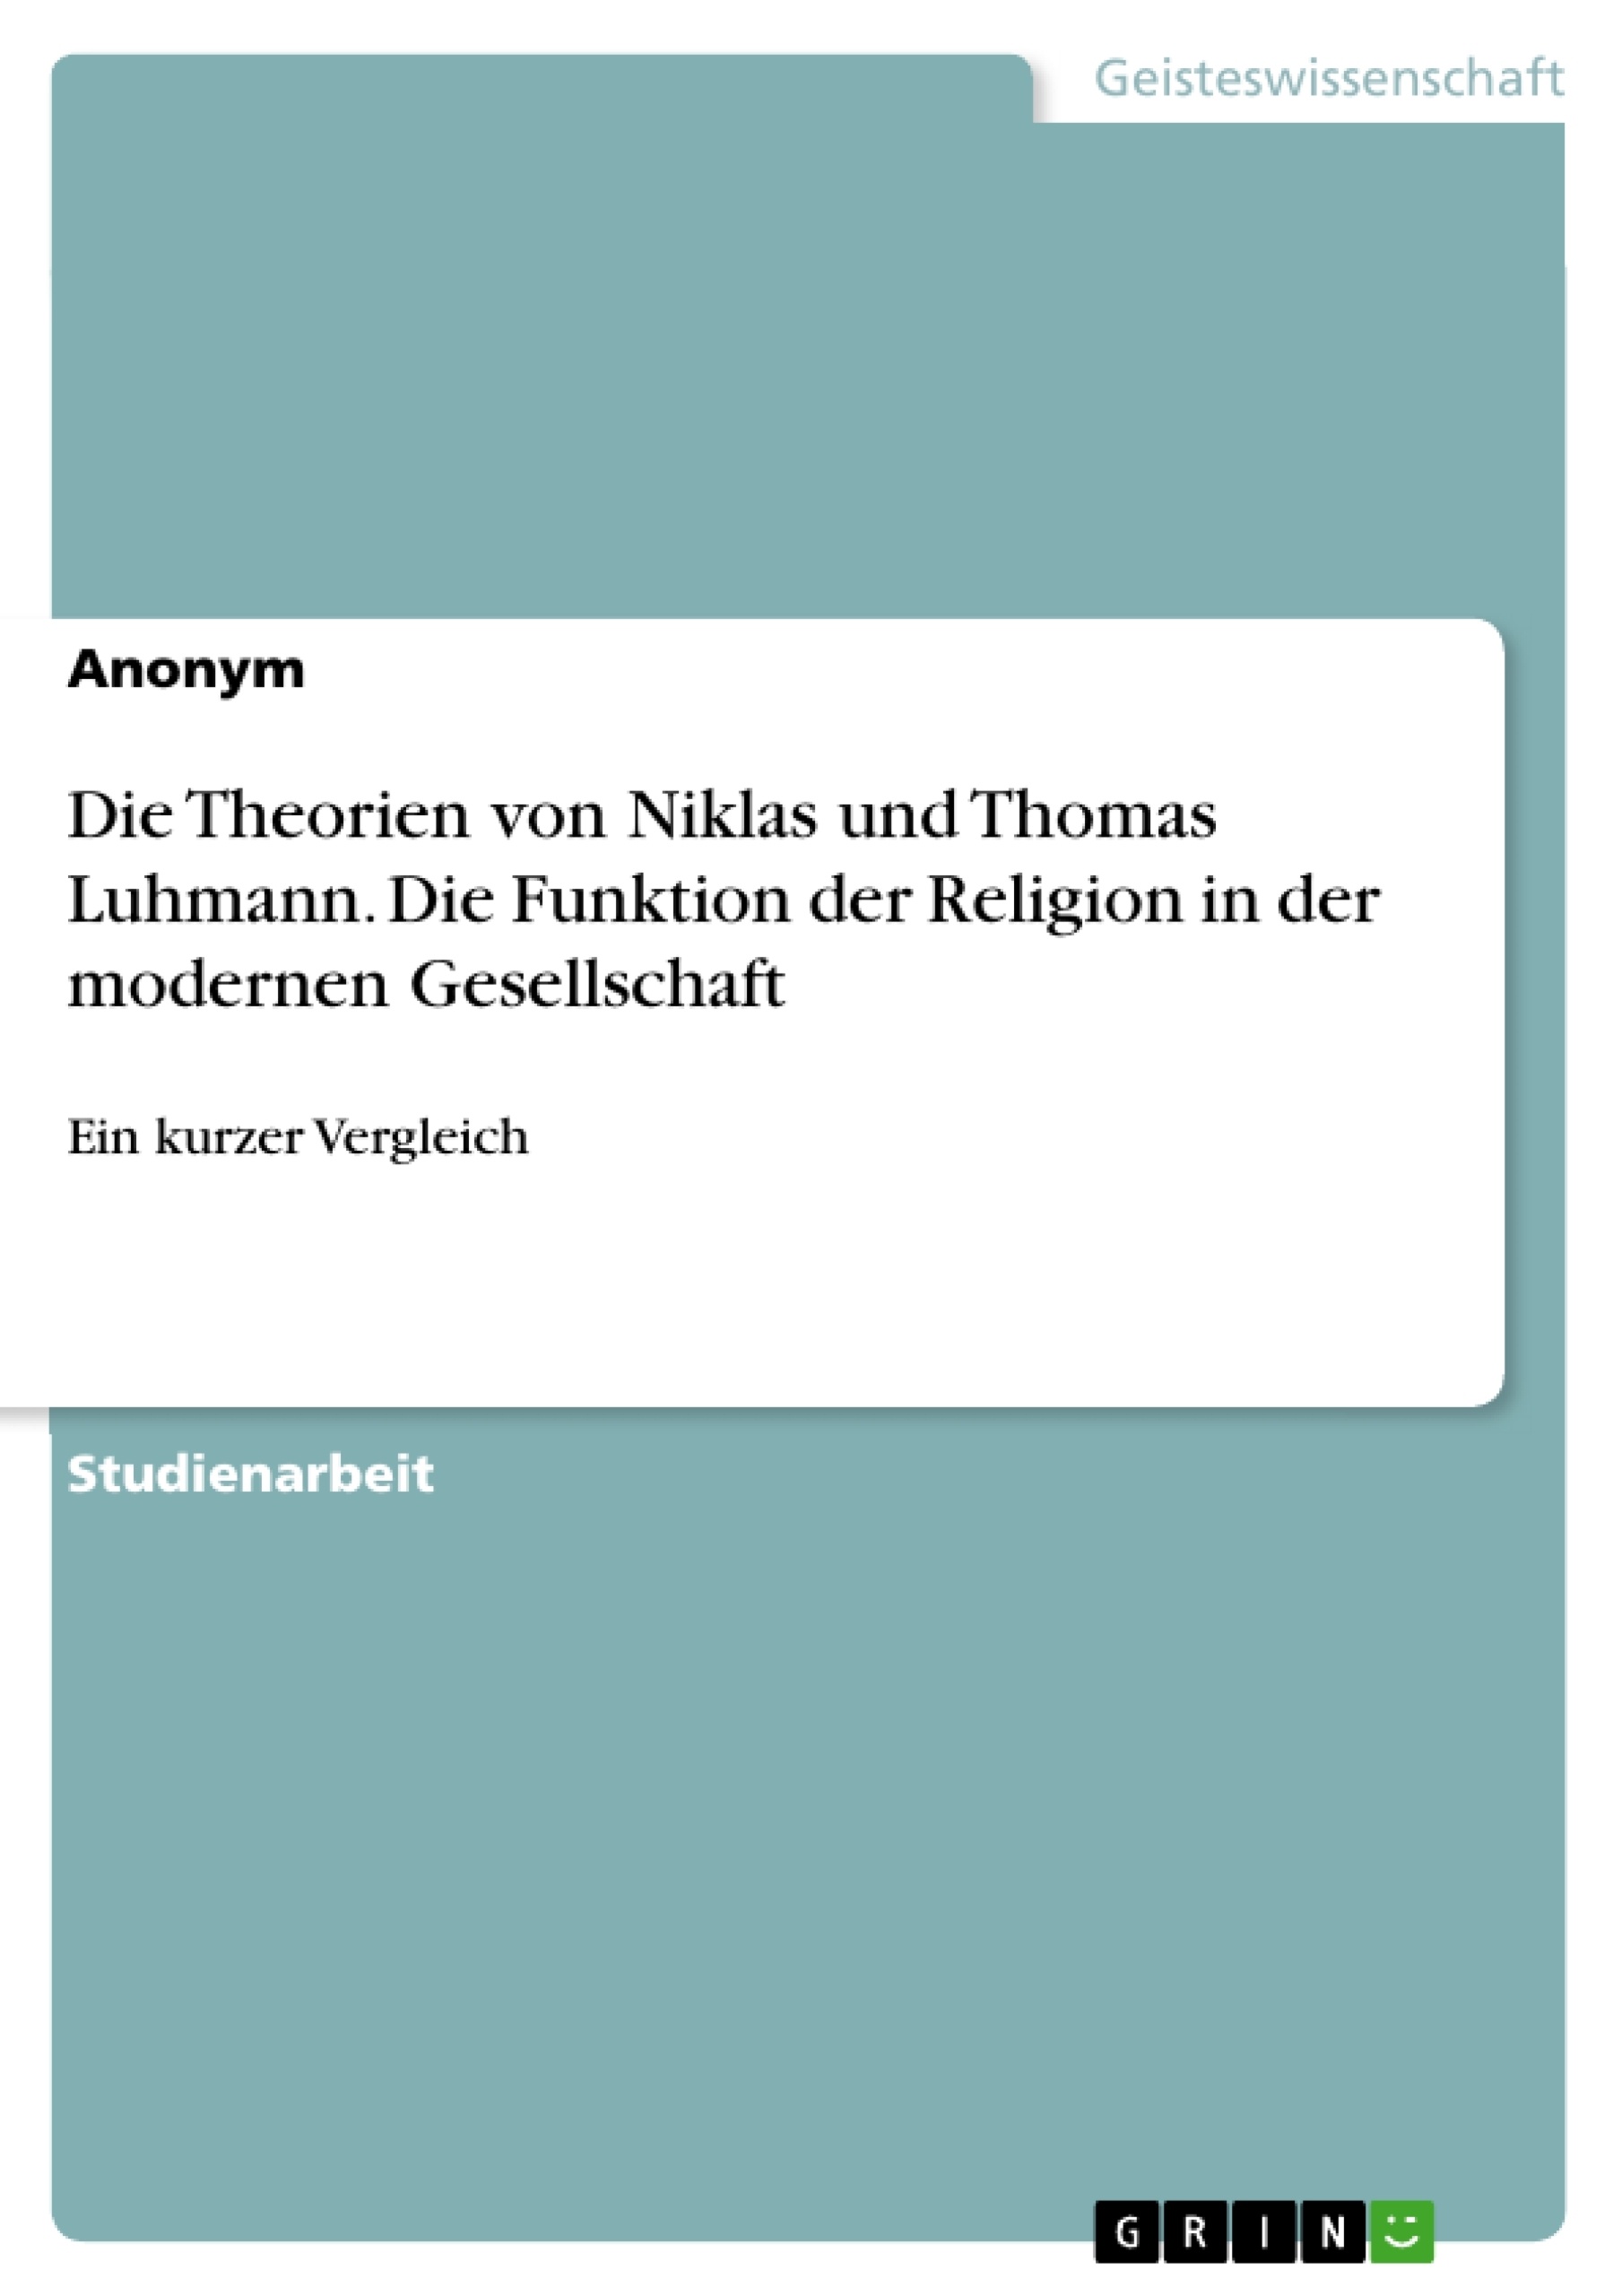 Title: Die Theorien von Niklas und Thomas Luhmann. Die Funktion der Religion in der modernen Gesellschaft